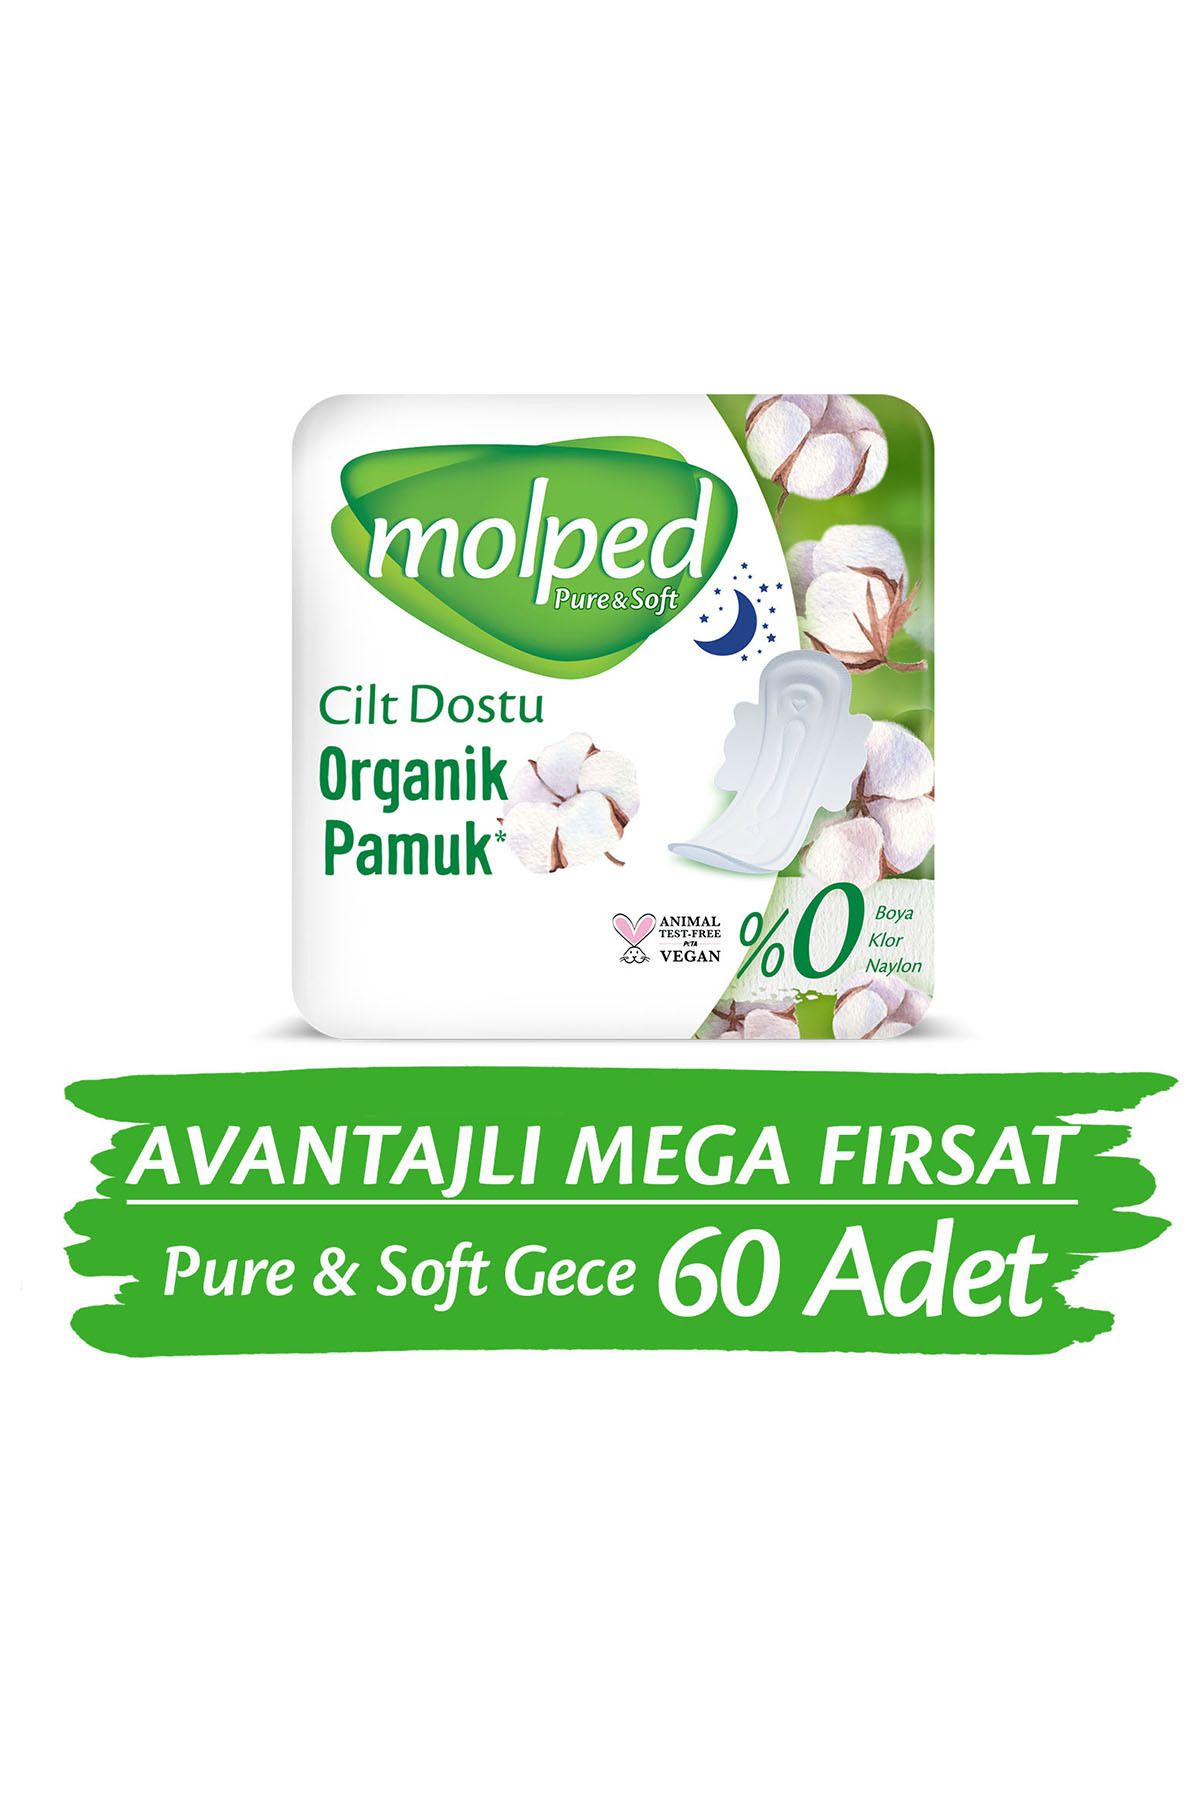 Molped Pure&soft Gece Avantajlı Mega Fırsat Paketi 60 Adet